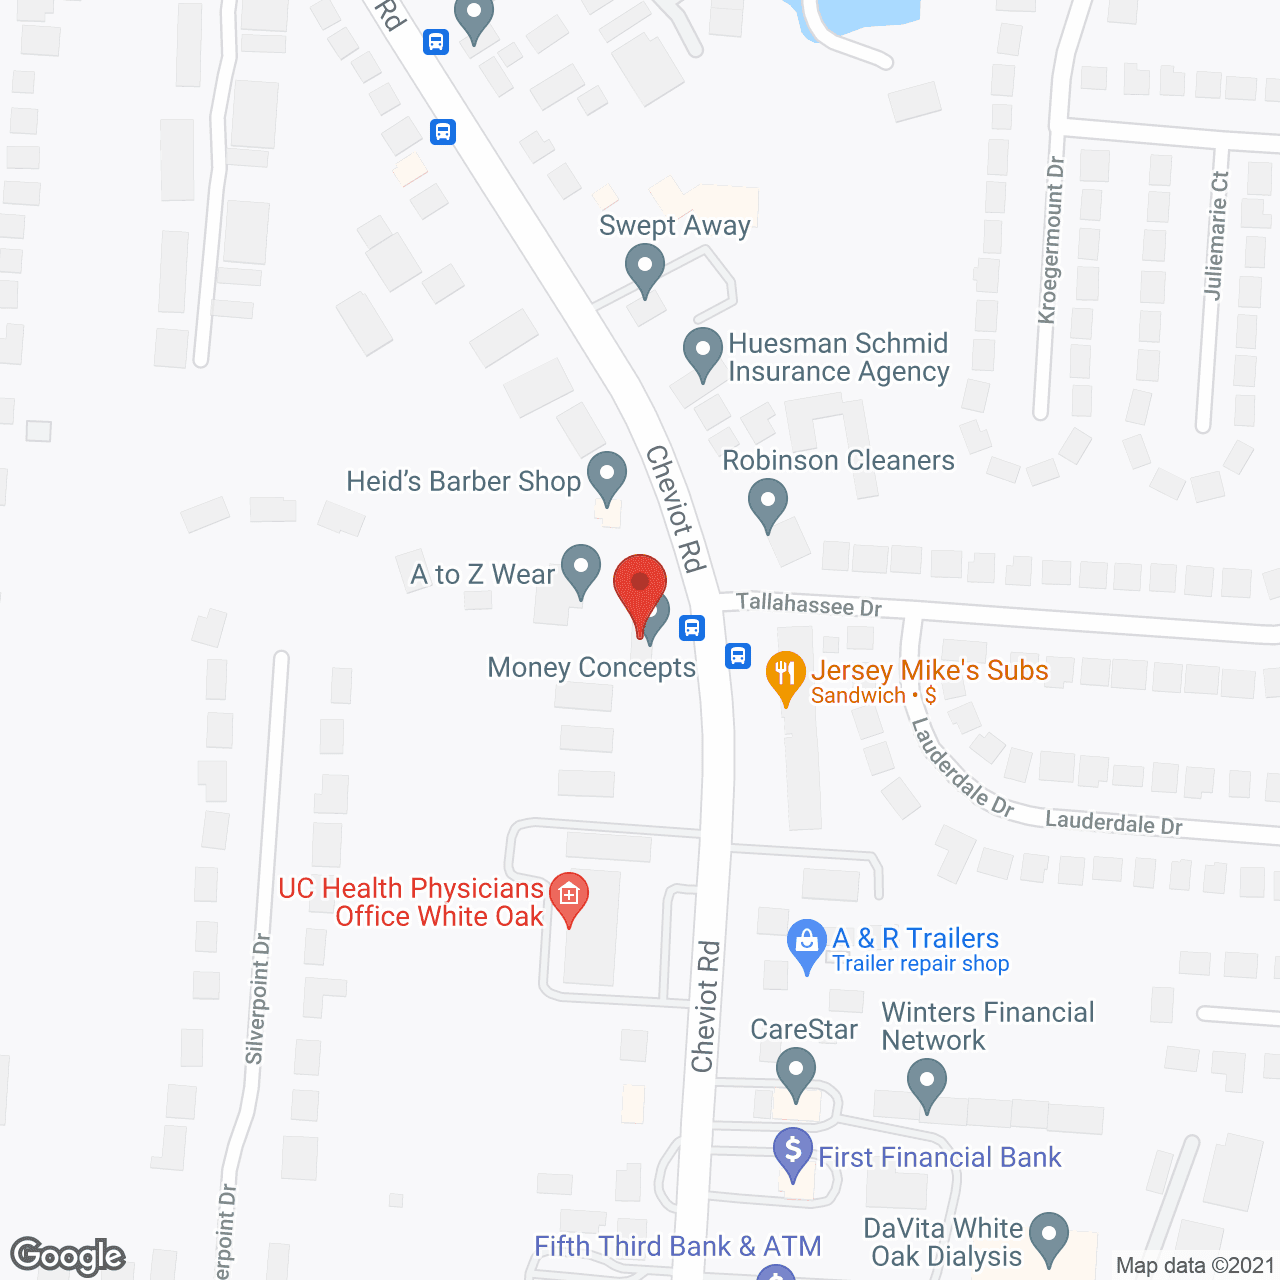 Visiting Angels Cincinnati West in google map